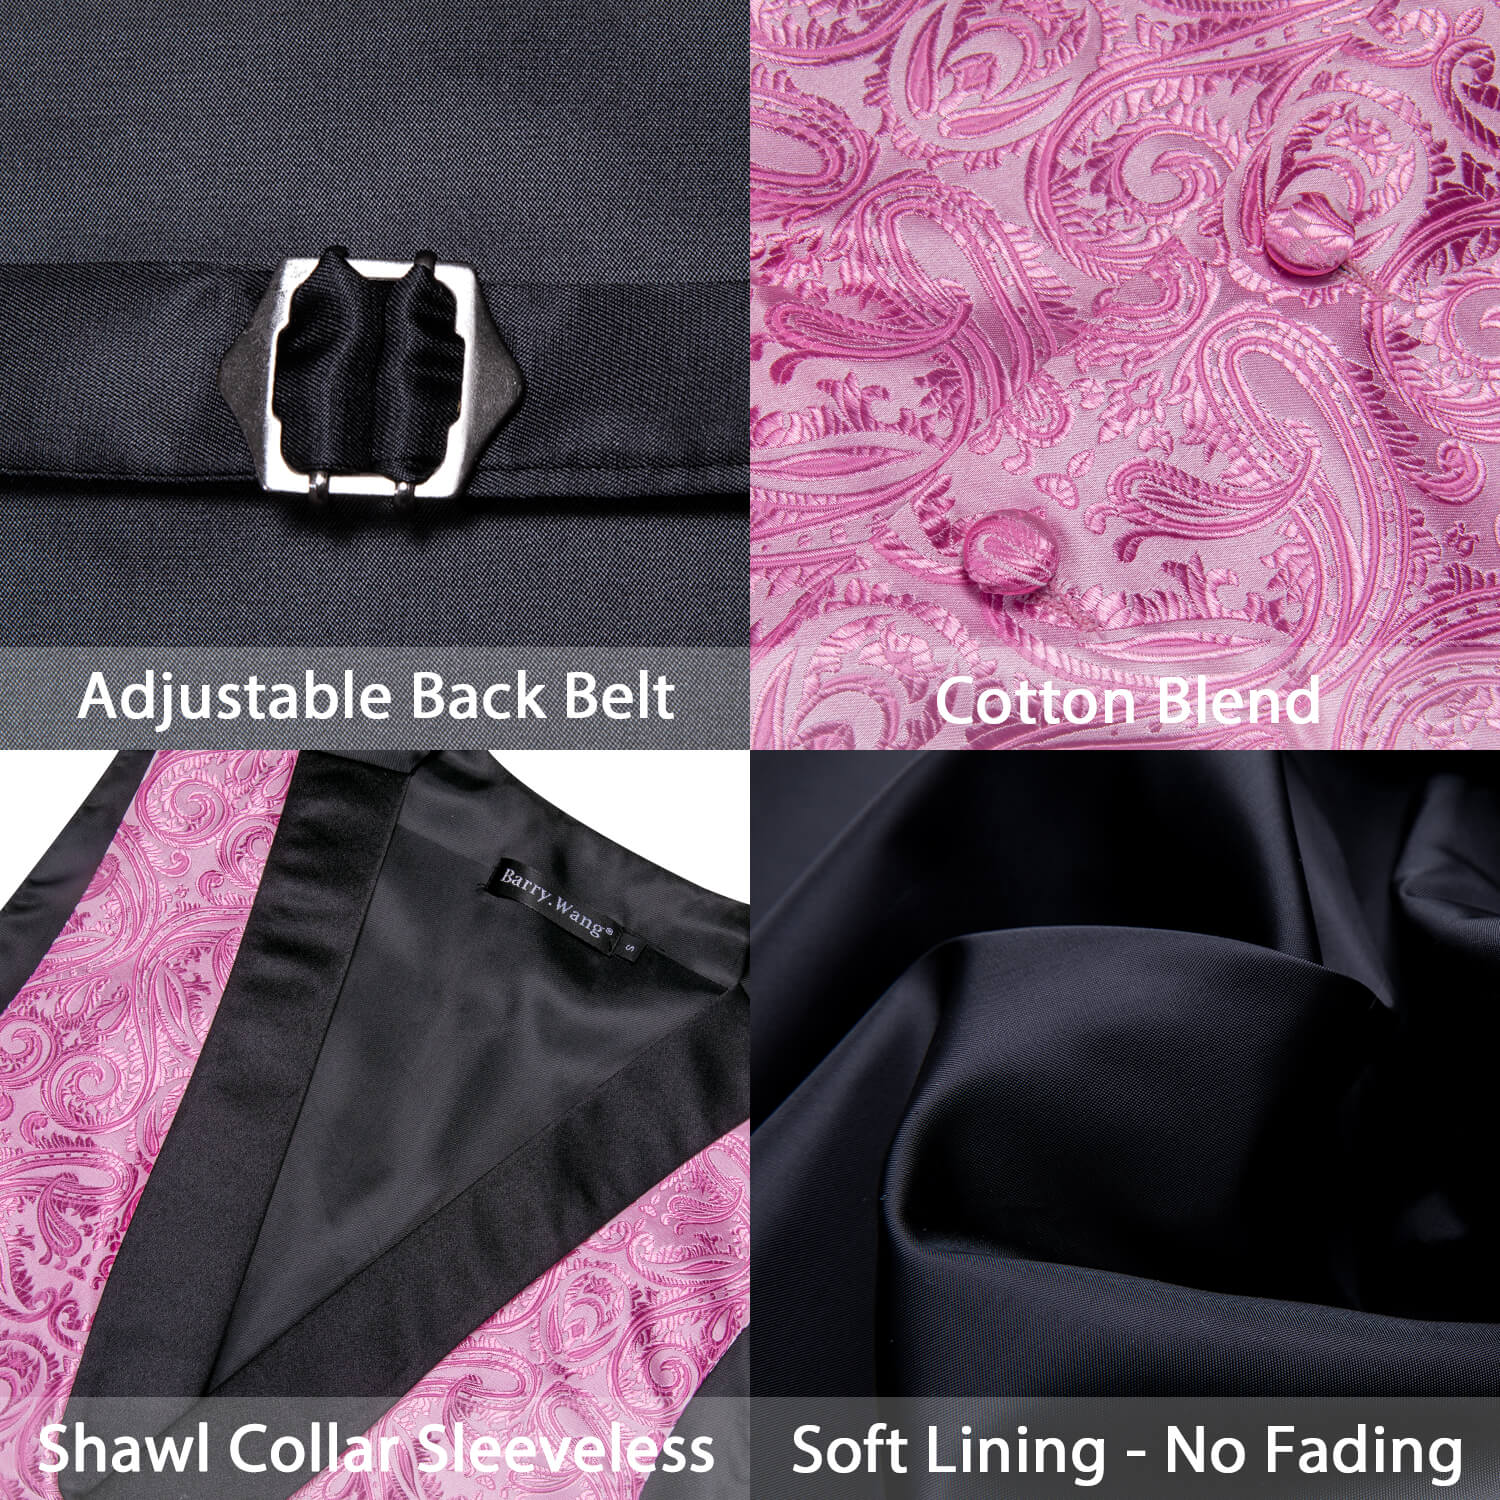 Barry.wang Shawl Collar Vest Hot Pink Paisley Men's Vest Necktie Hanky Cufflinks Set